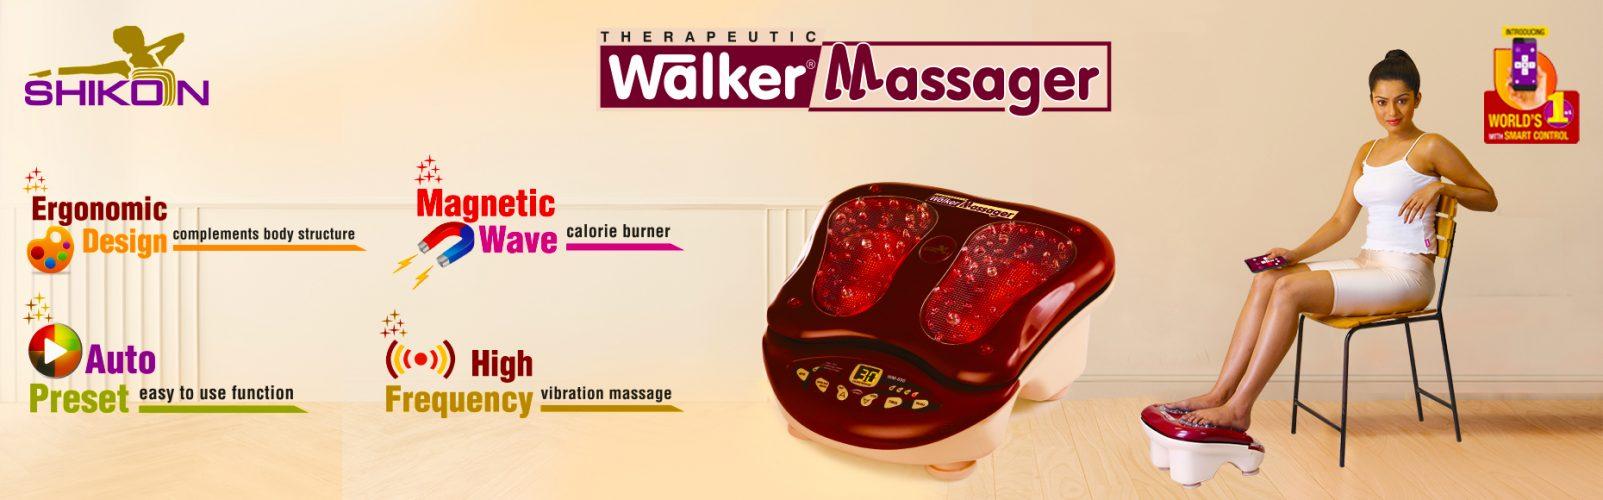 walker massager